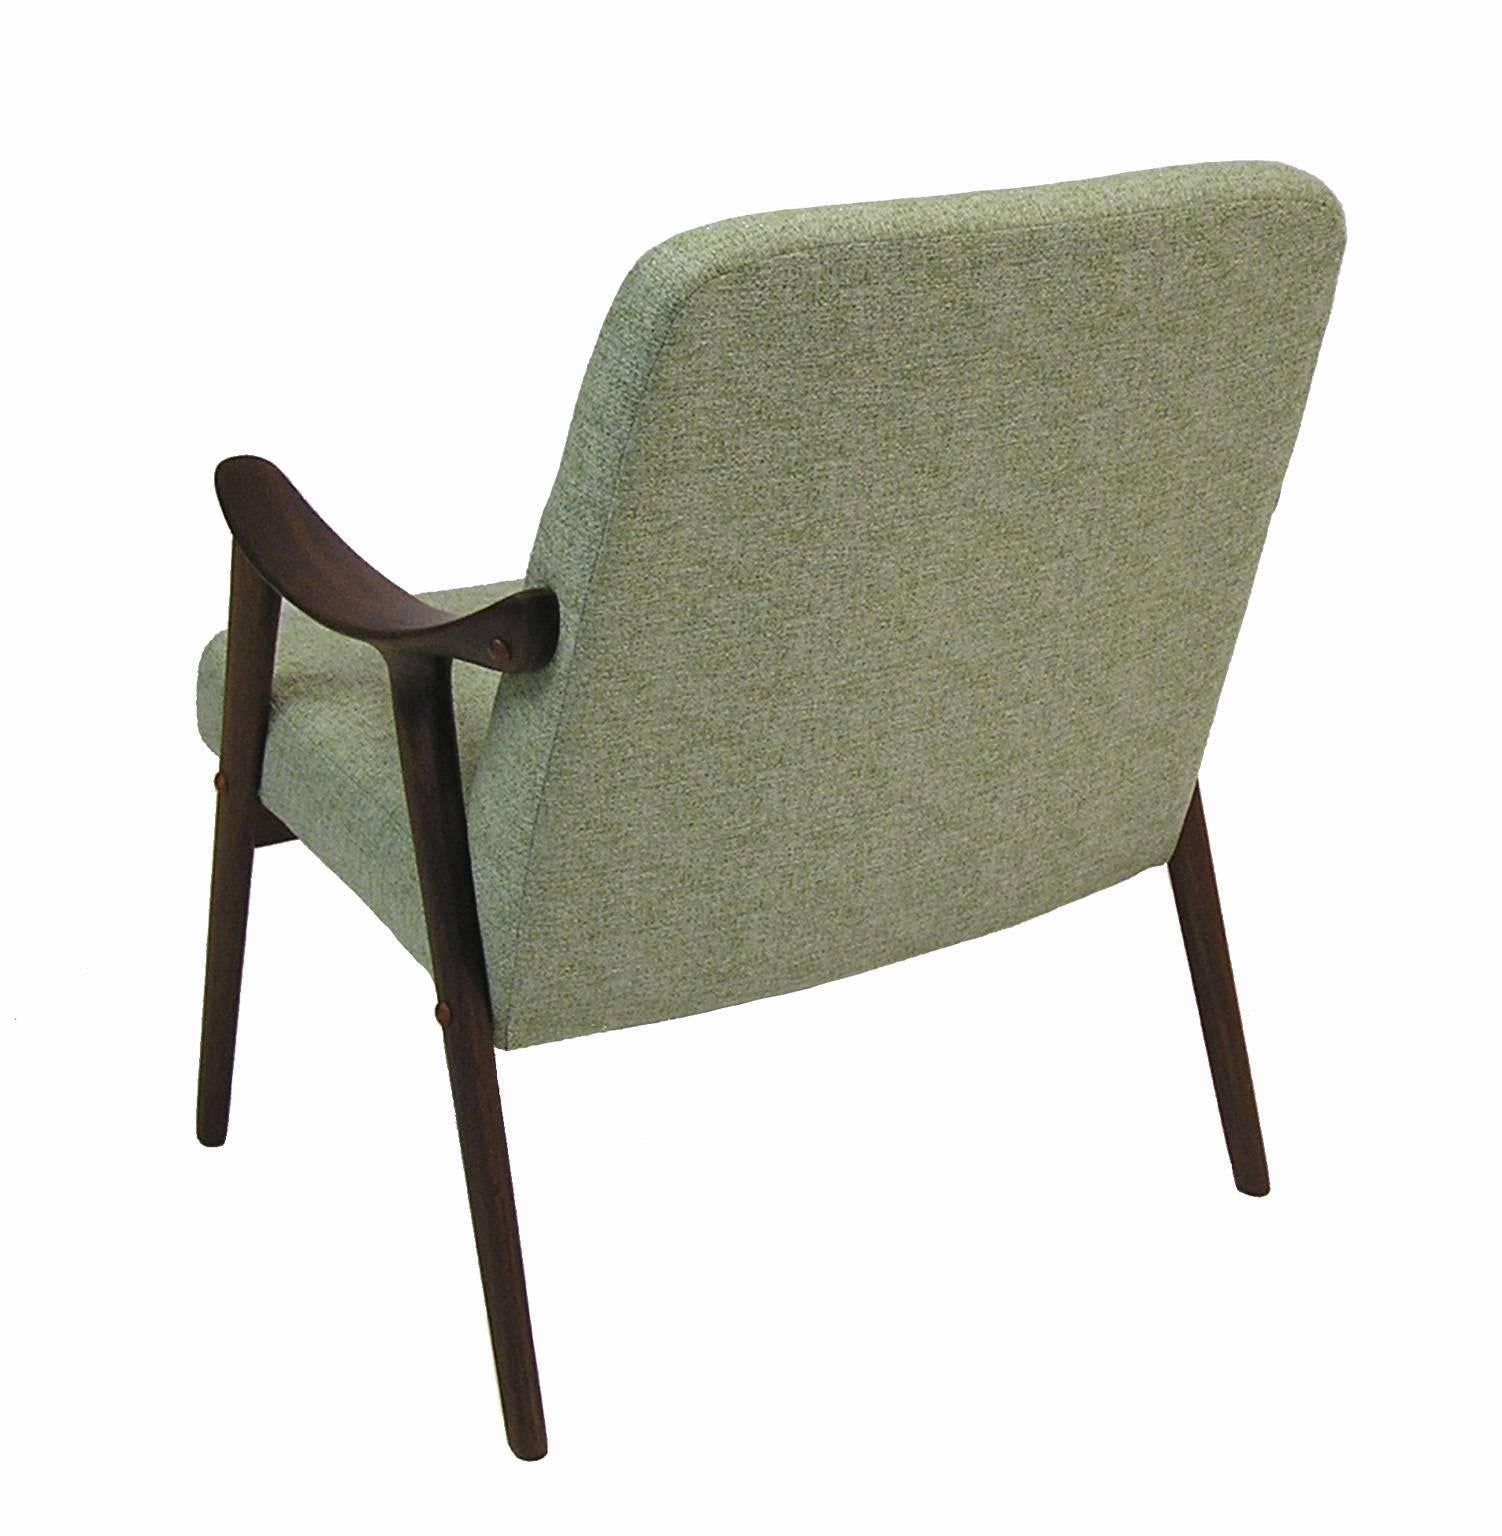 Norwegian 1960s Teak Lounge Chair by Ingmar Relling for Westnofa, Norway